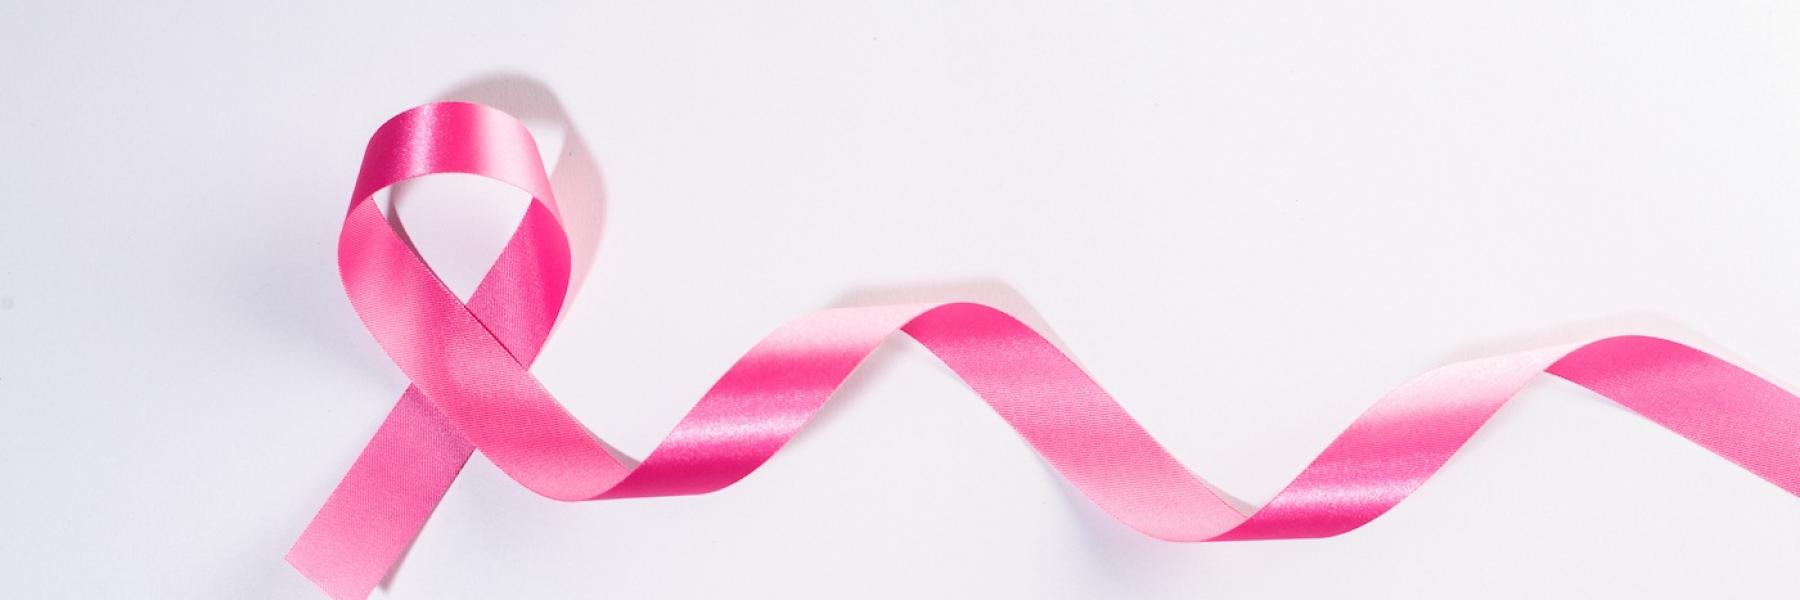 هل التين المجفف يحارب سرطان الثدي؟